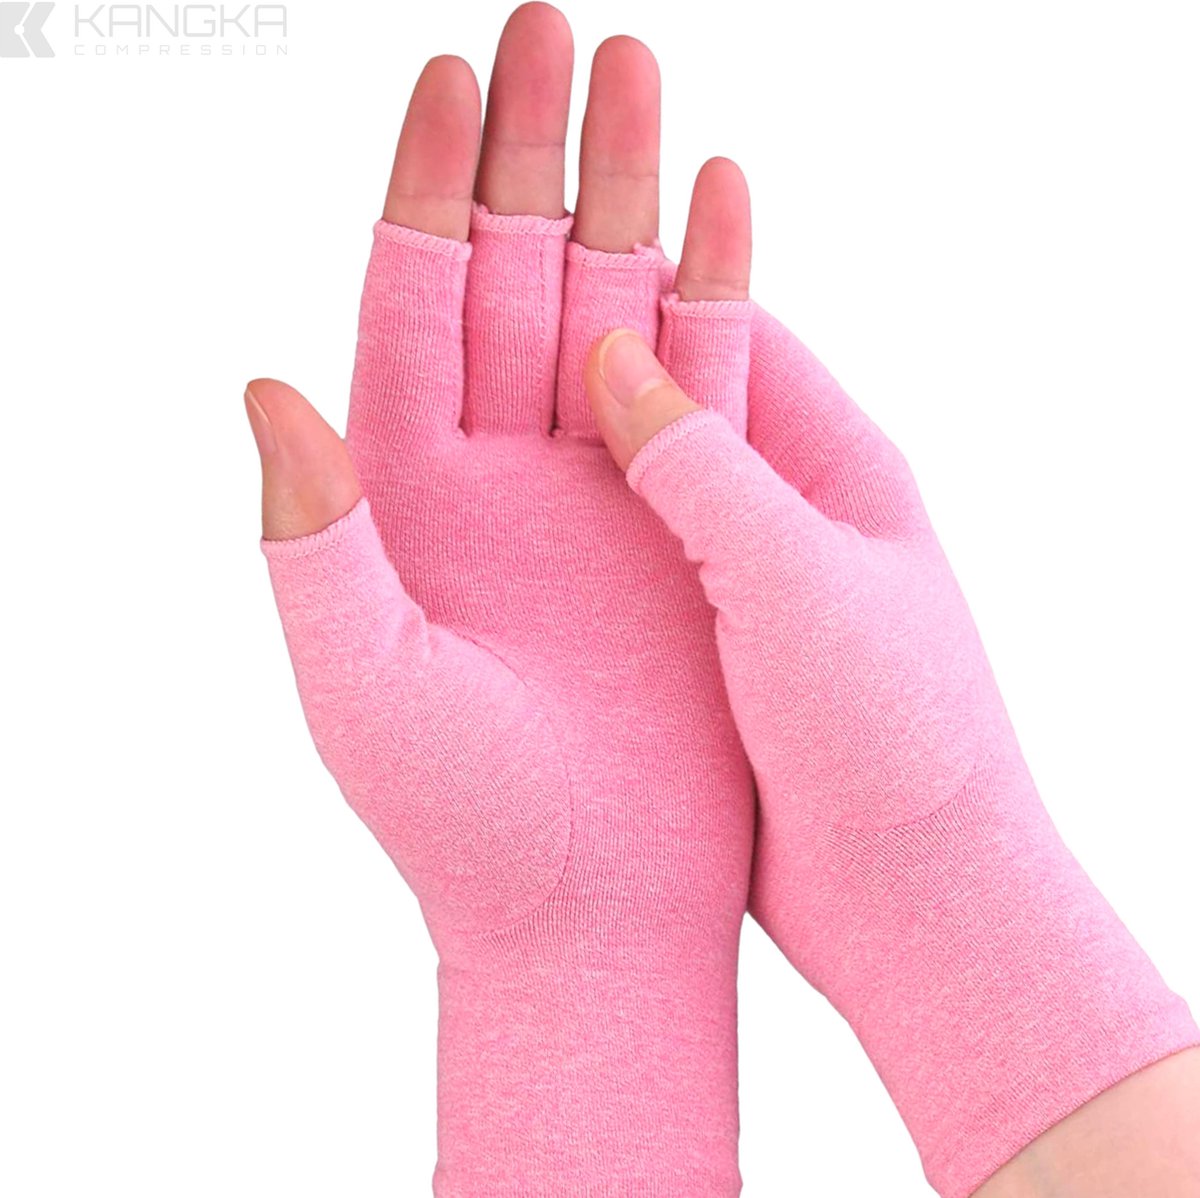 Kangka Reuma Artritis Handschoenen met Open Vingertoppen Design Maat L - Roze Kleur